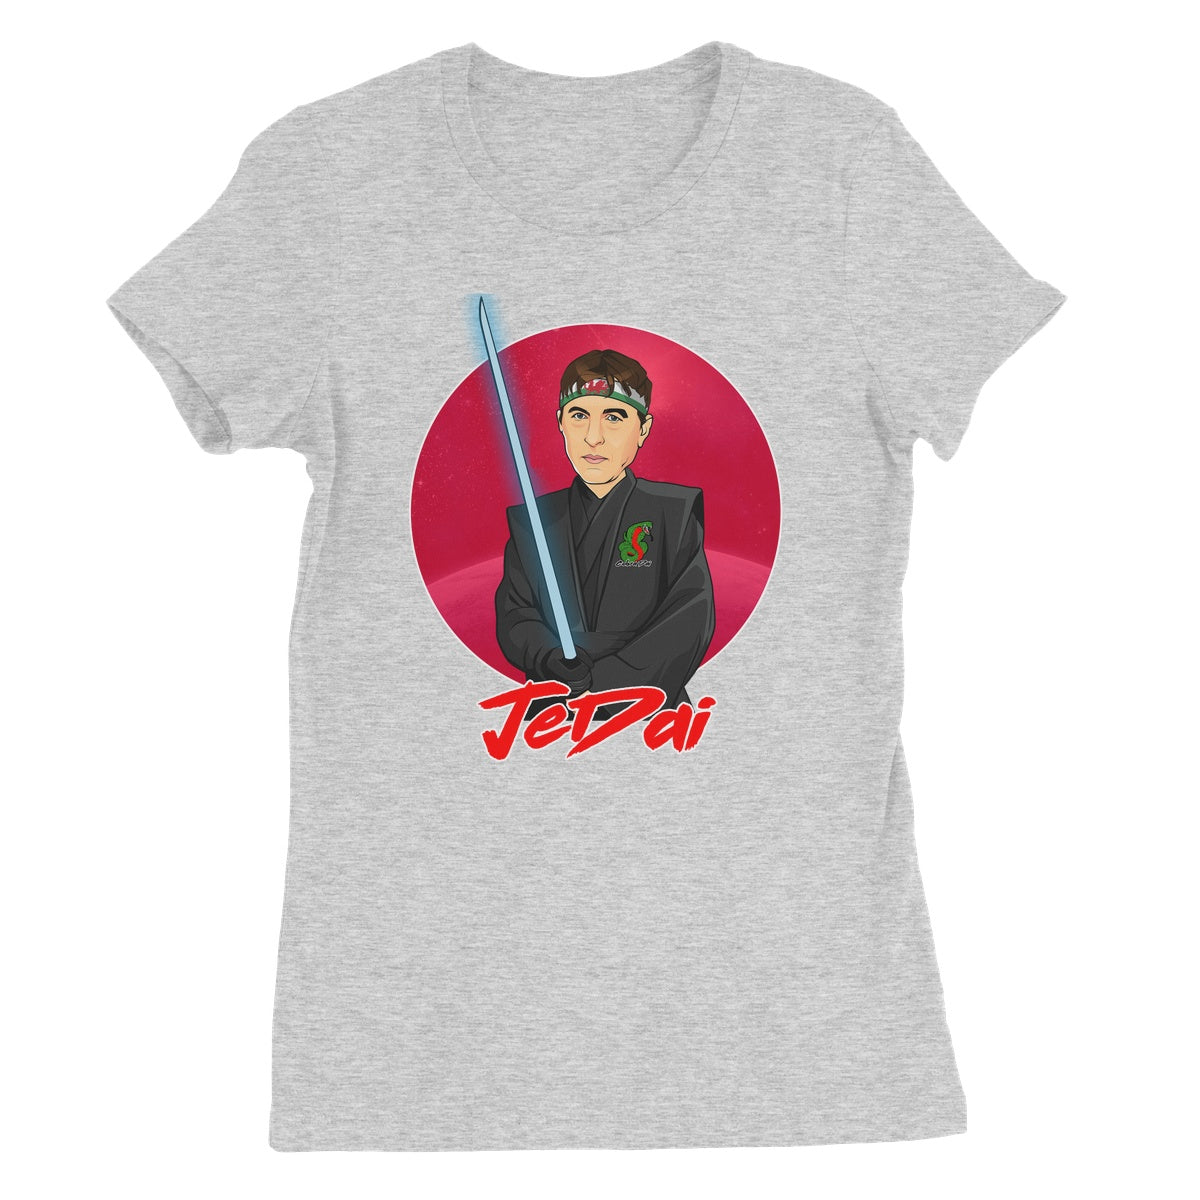 Jedai Women's Favourite T-Shirt